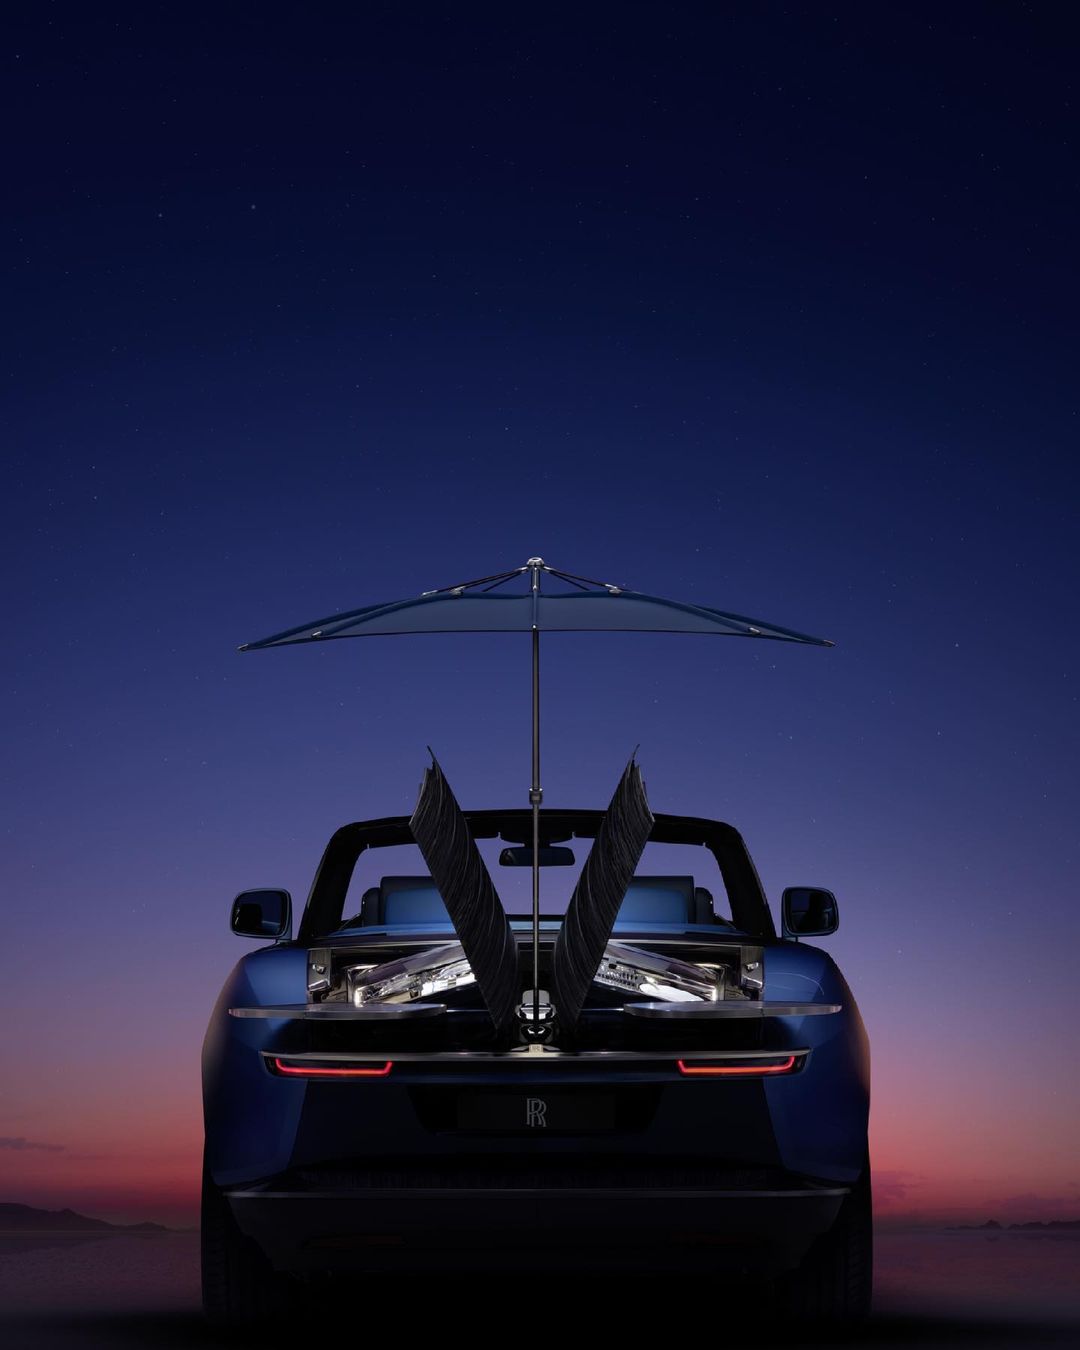 Бейонсе и Джей-Зи приобрели Rolls-Royce Boat Tail за $28 млн – самое дорогое авто в мире